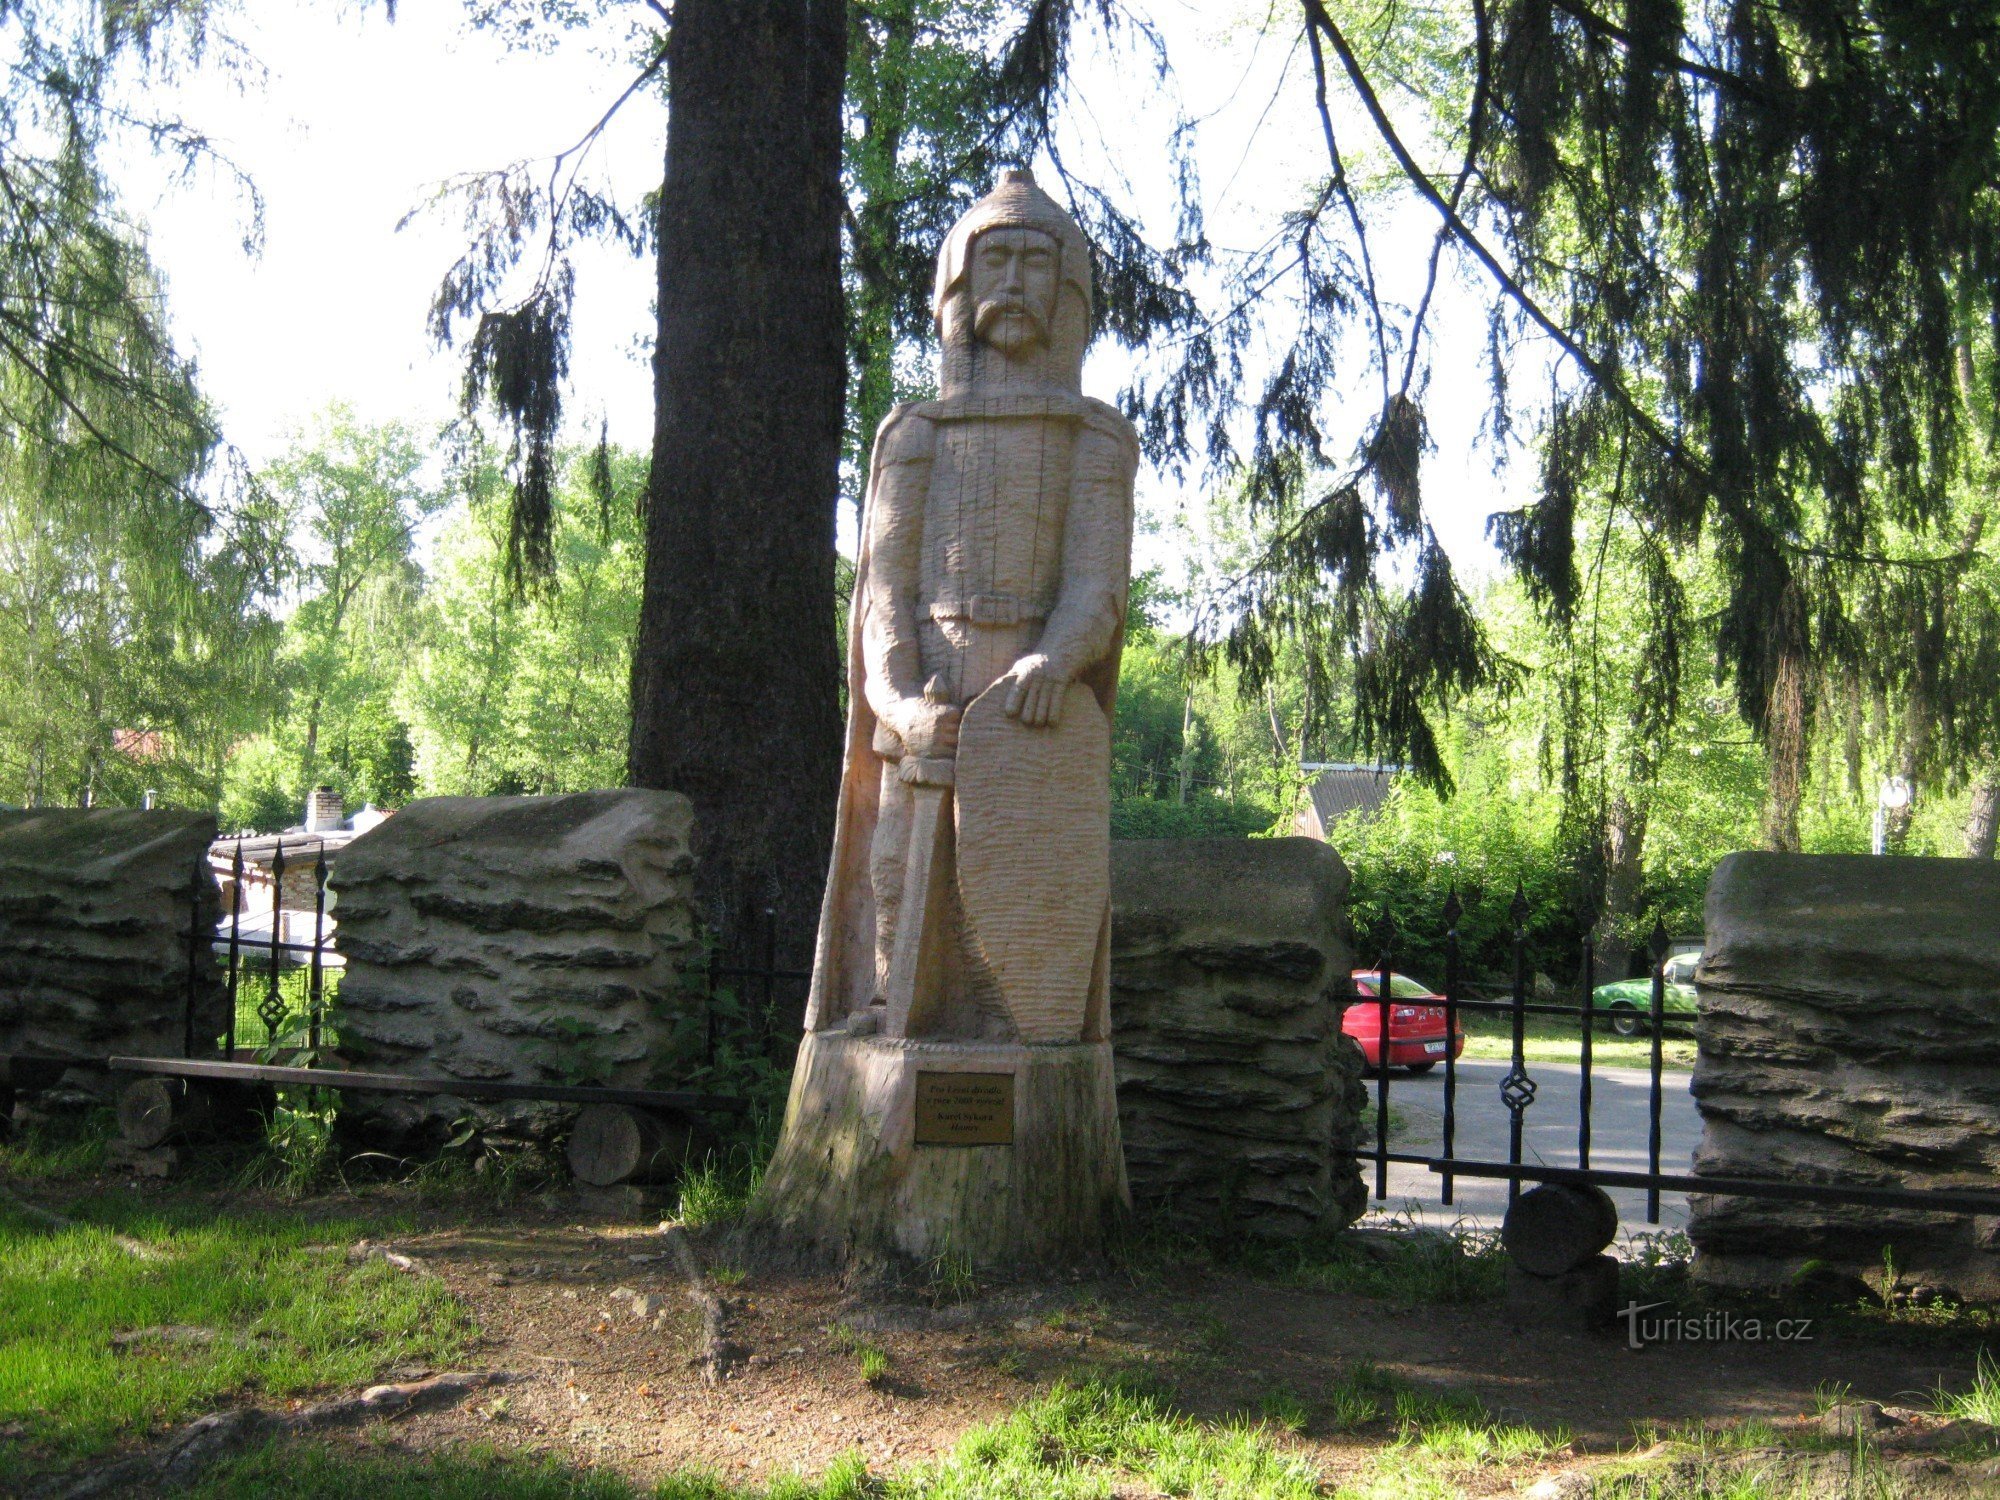 Sculpture by Karel Sýkora